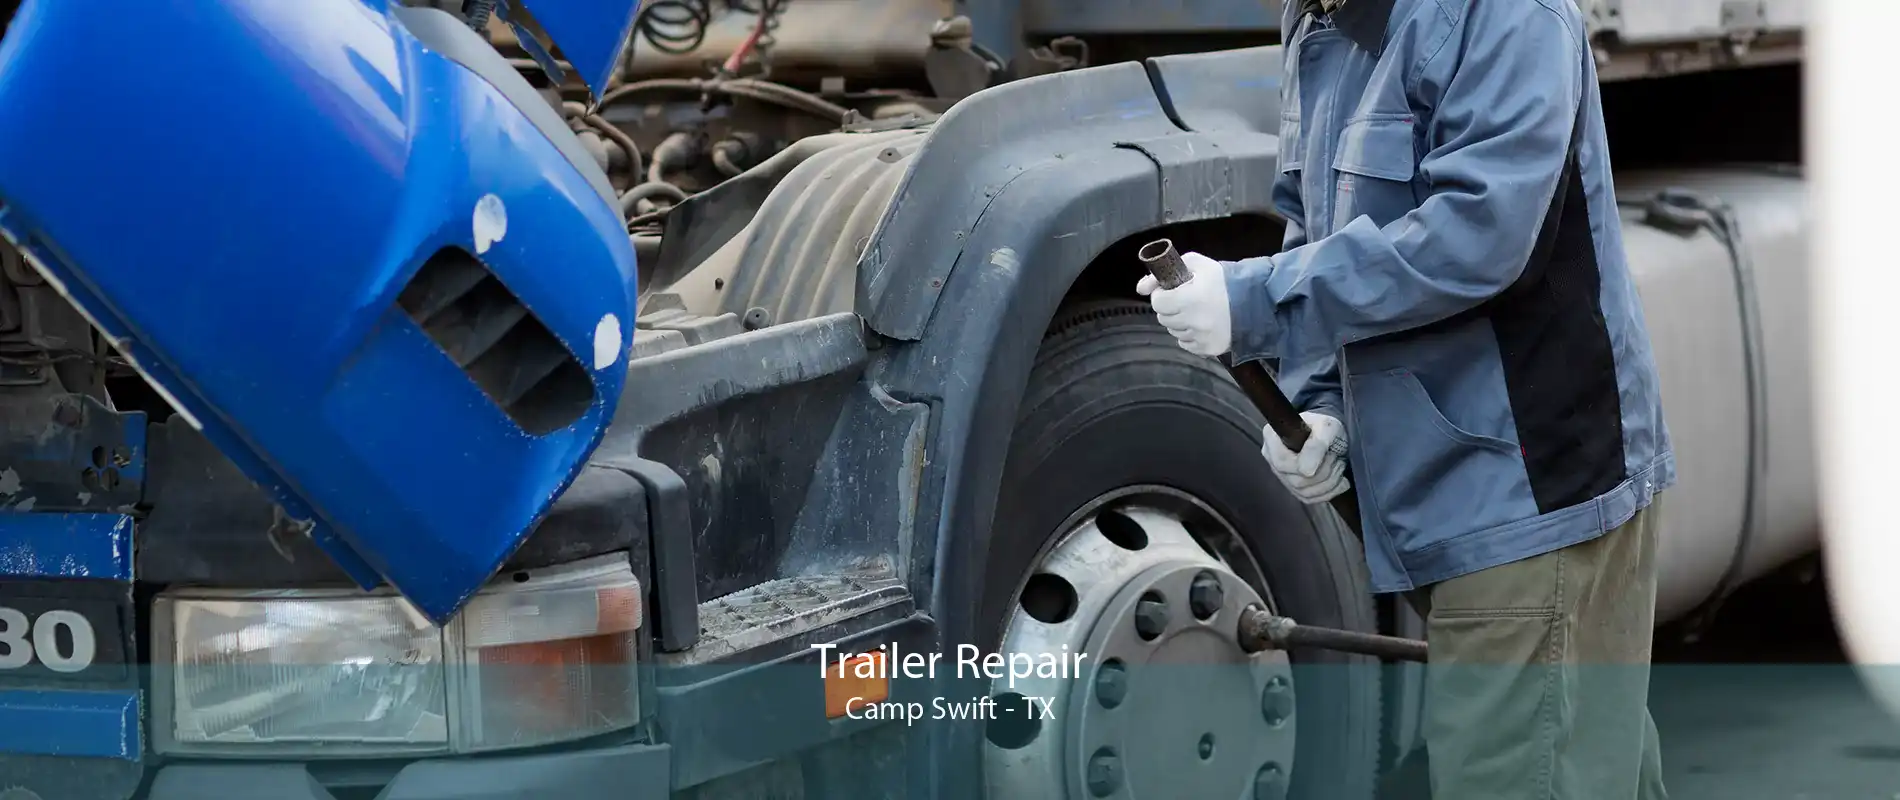 Trailer Repair Camp Swift - TX